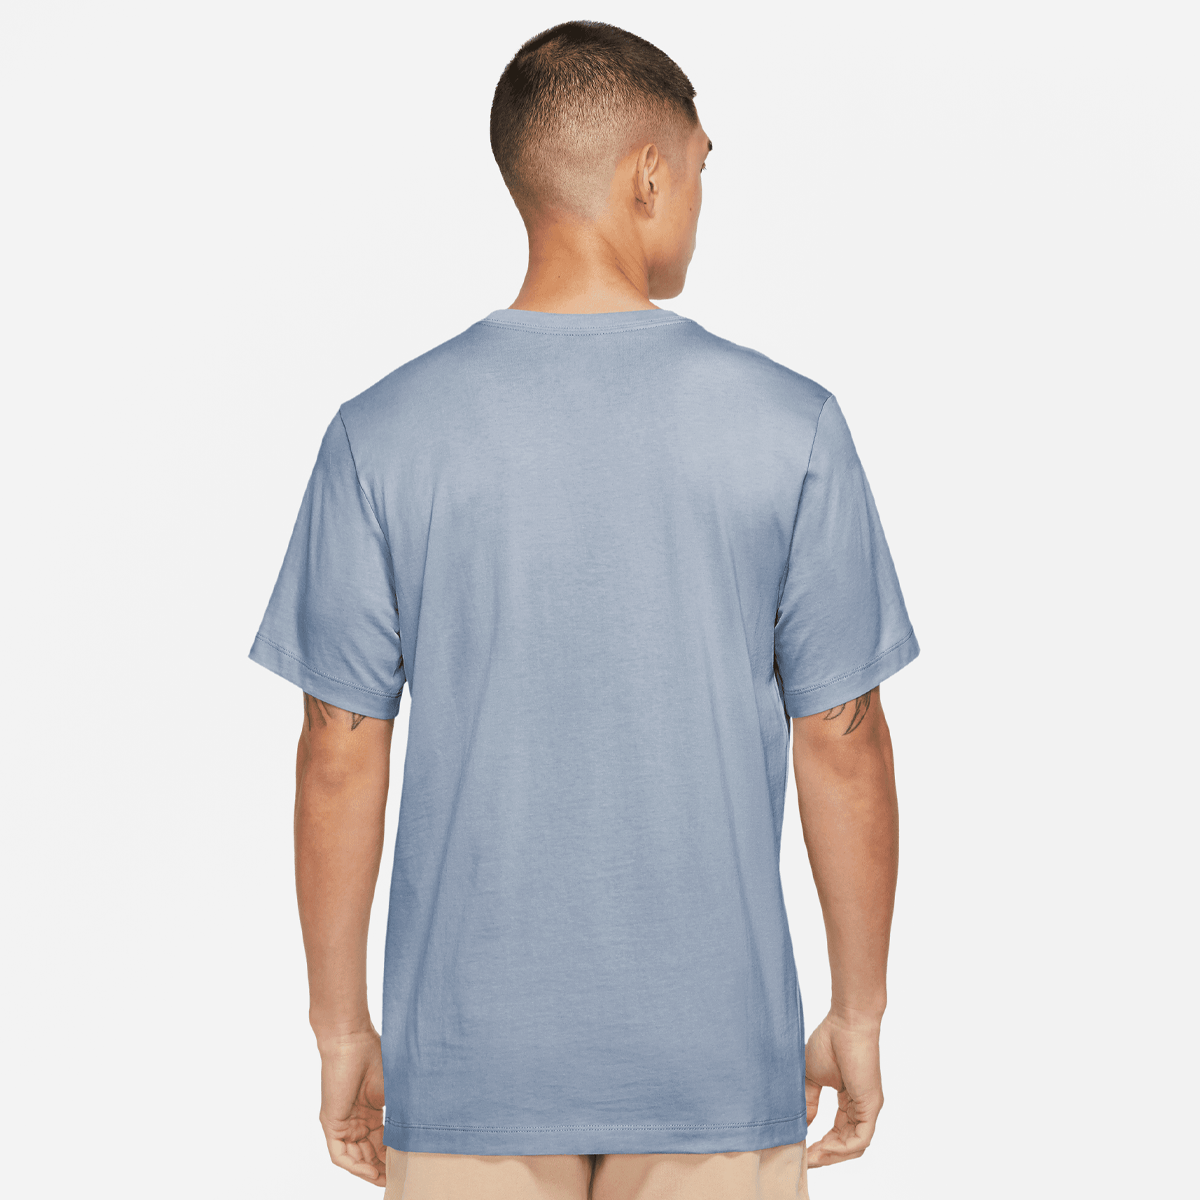 Jordan Jumpman Shortsleeve Crew Shirt T-shirts Heren blue grey white maat: S beschikbare maaten:S M L XL